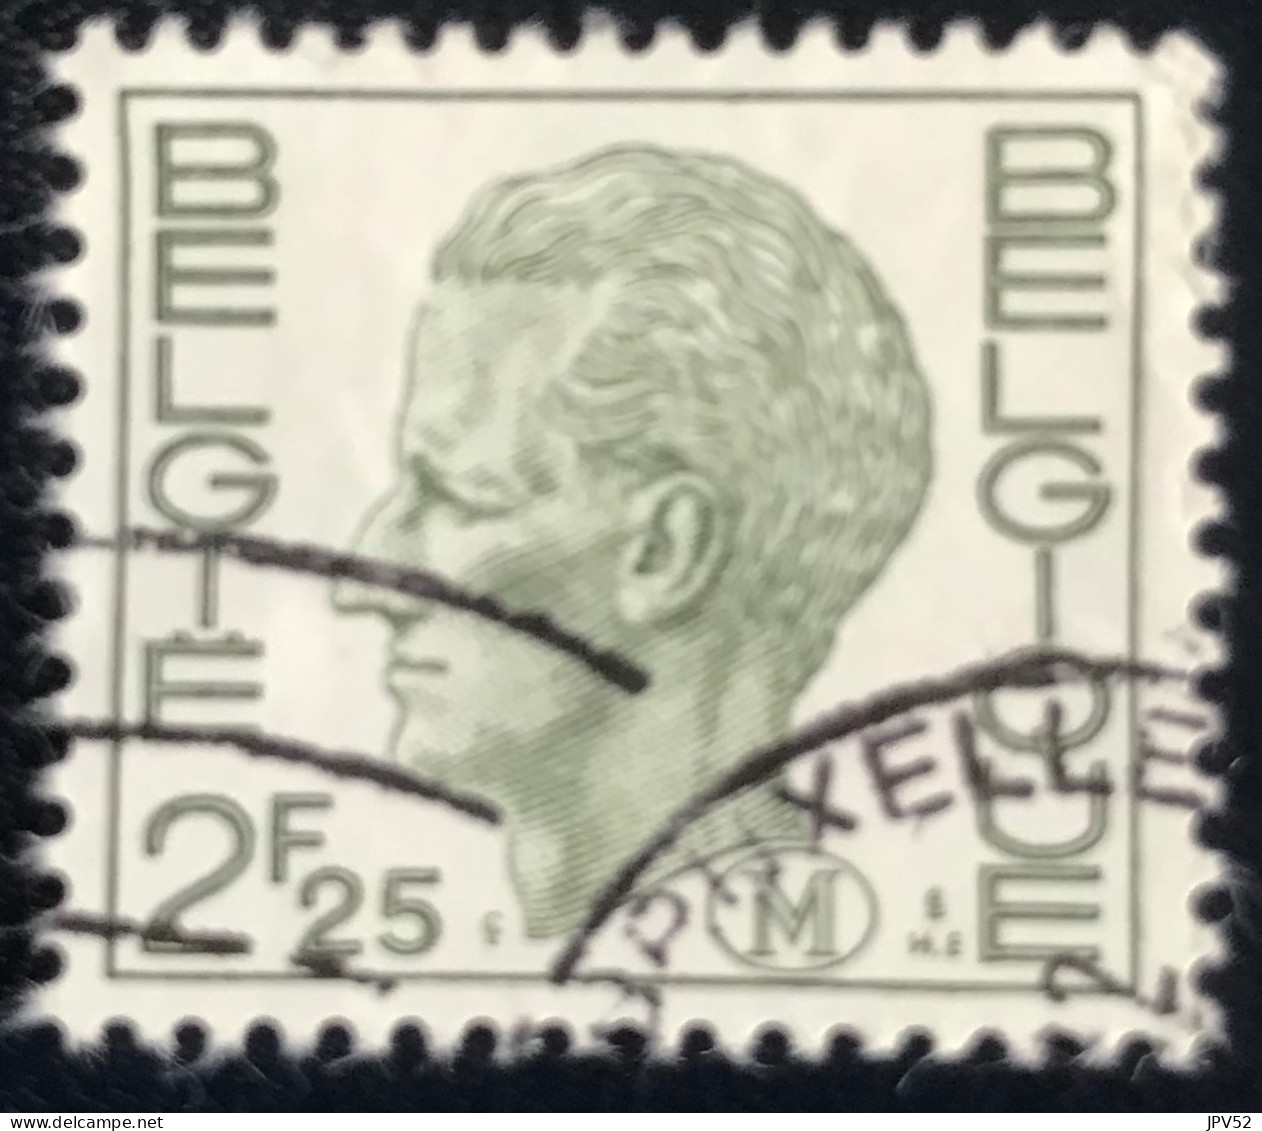 België - Belgique - C18/26 - 1972 - (°)used - Michel 3 - Militair - Koning Boudewijn - Stamps [M]